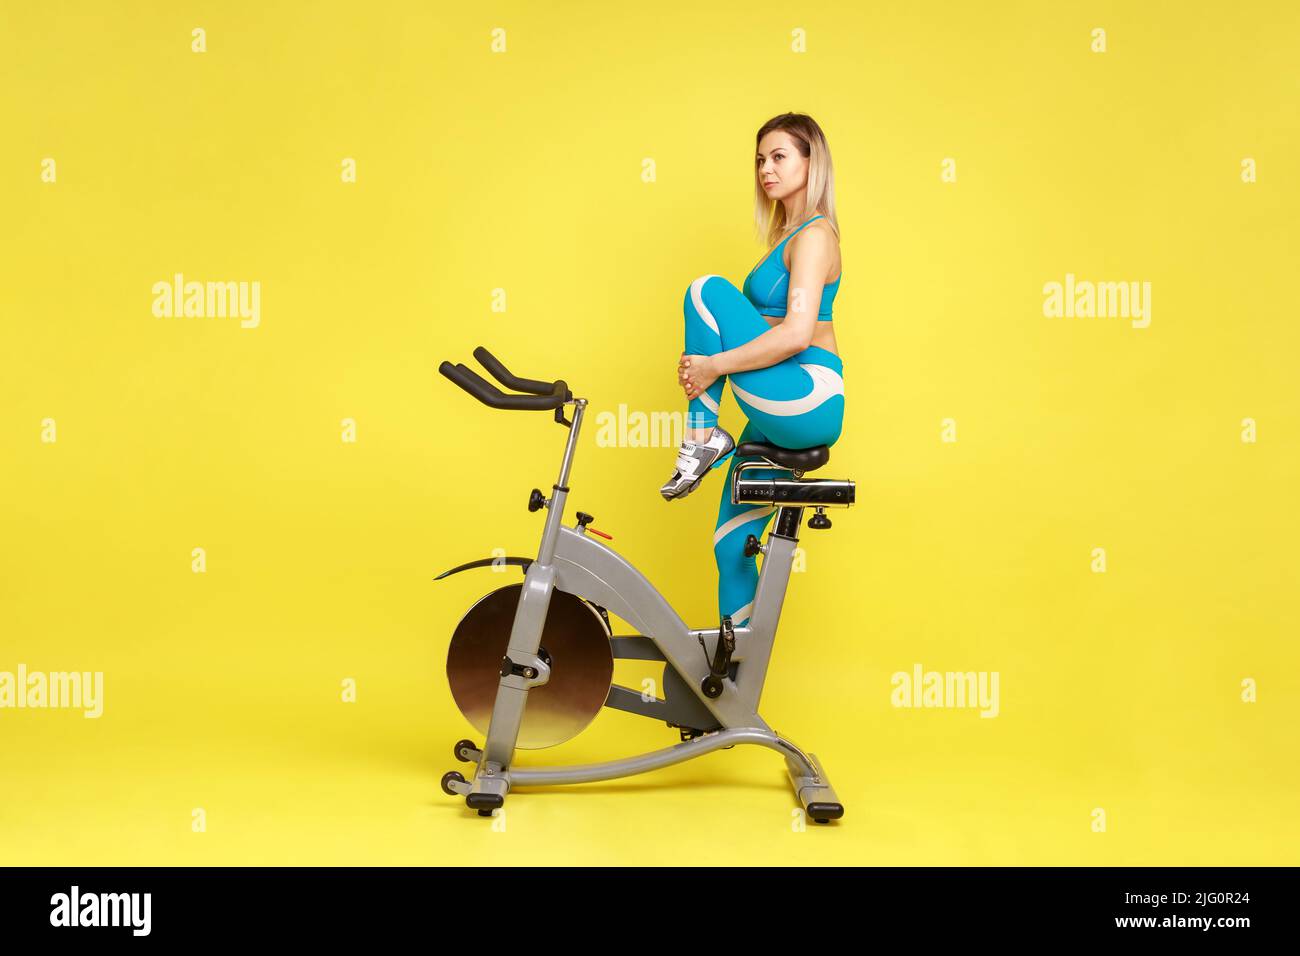 Ritratto della vista laterale di attraente istruttore donna che allunga la gamba prima di allenarsi in bicicletta, guardando via, indossando abbigliamento sportivo blu. Studio interno girato isolato su sfondo giallo. Foto Stock